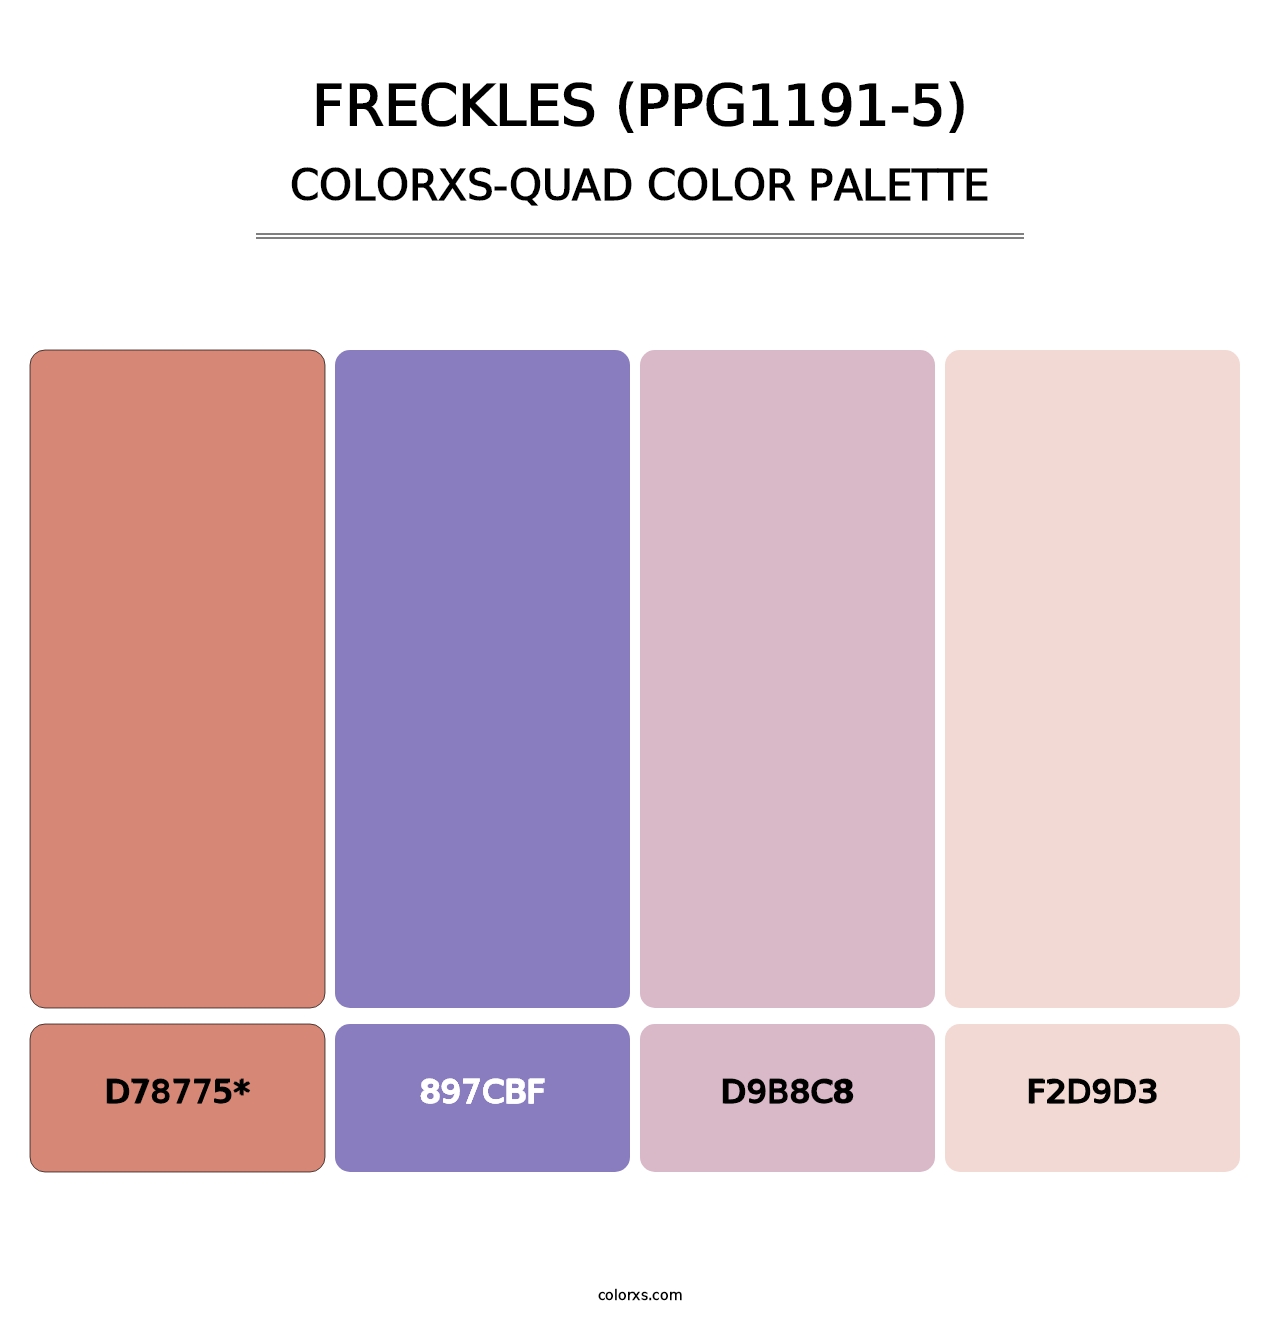 Freckles (PPG1191-5) - Colorxs Quad Palette